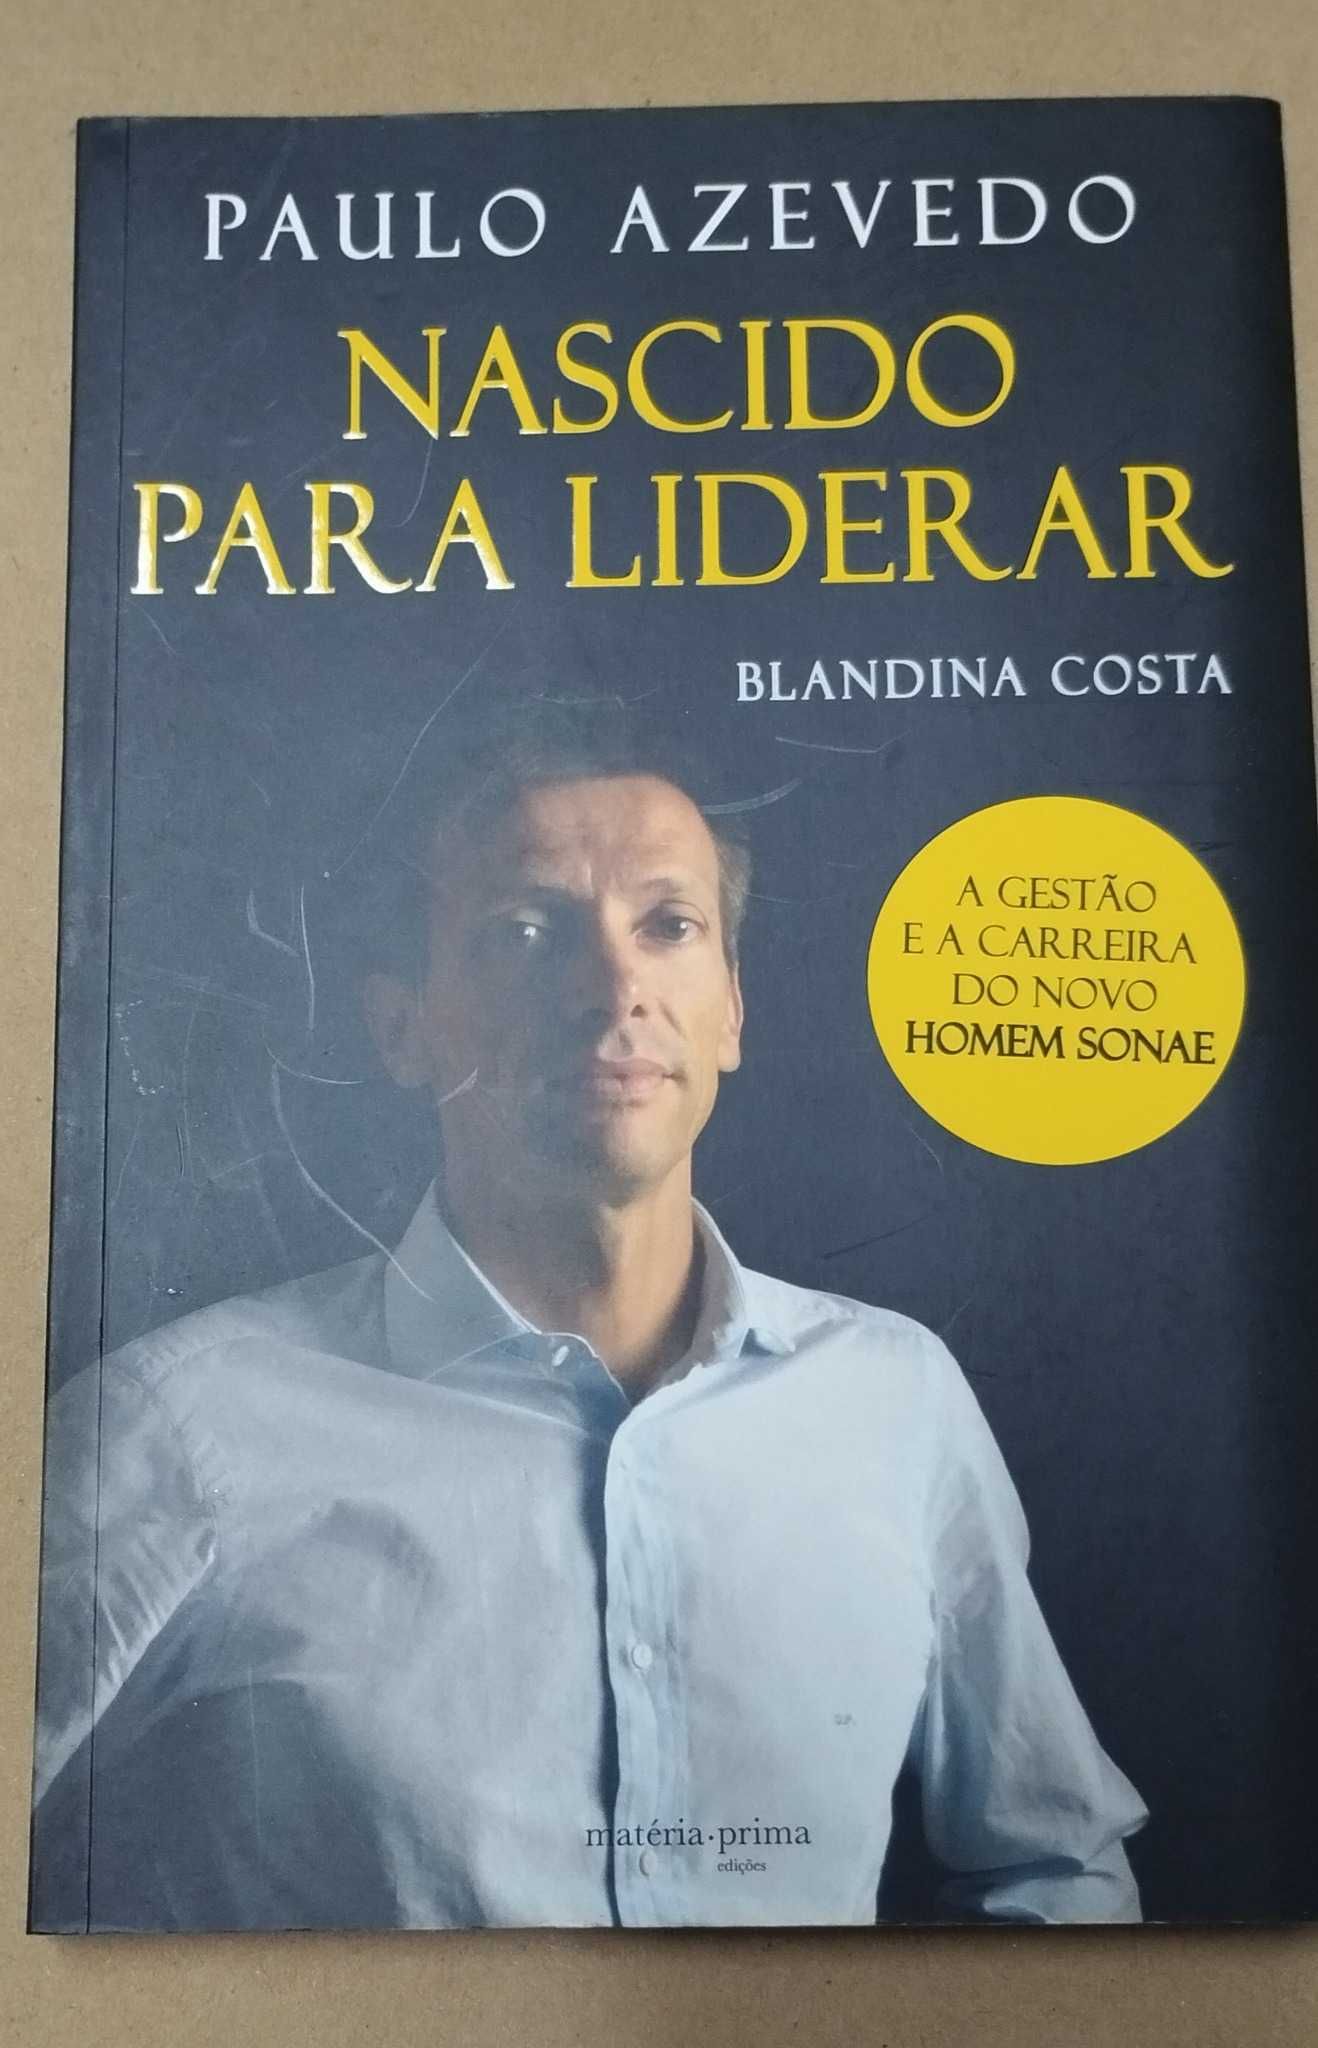 Paulo Azevedo - Nascido para Liderar de Blandina Costa